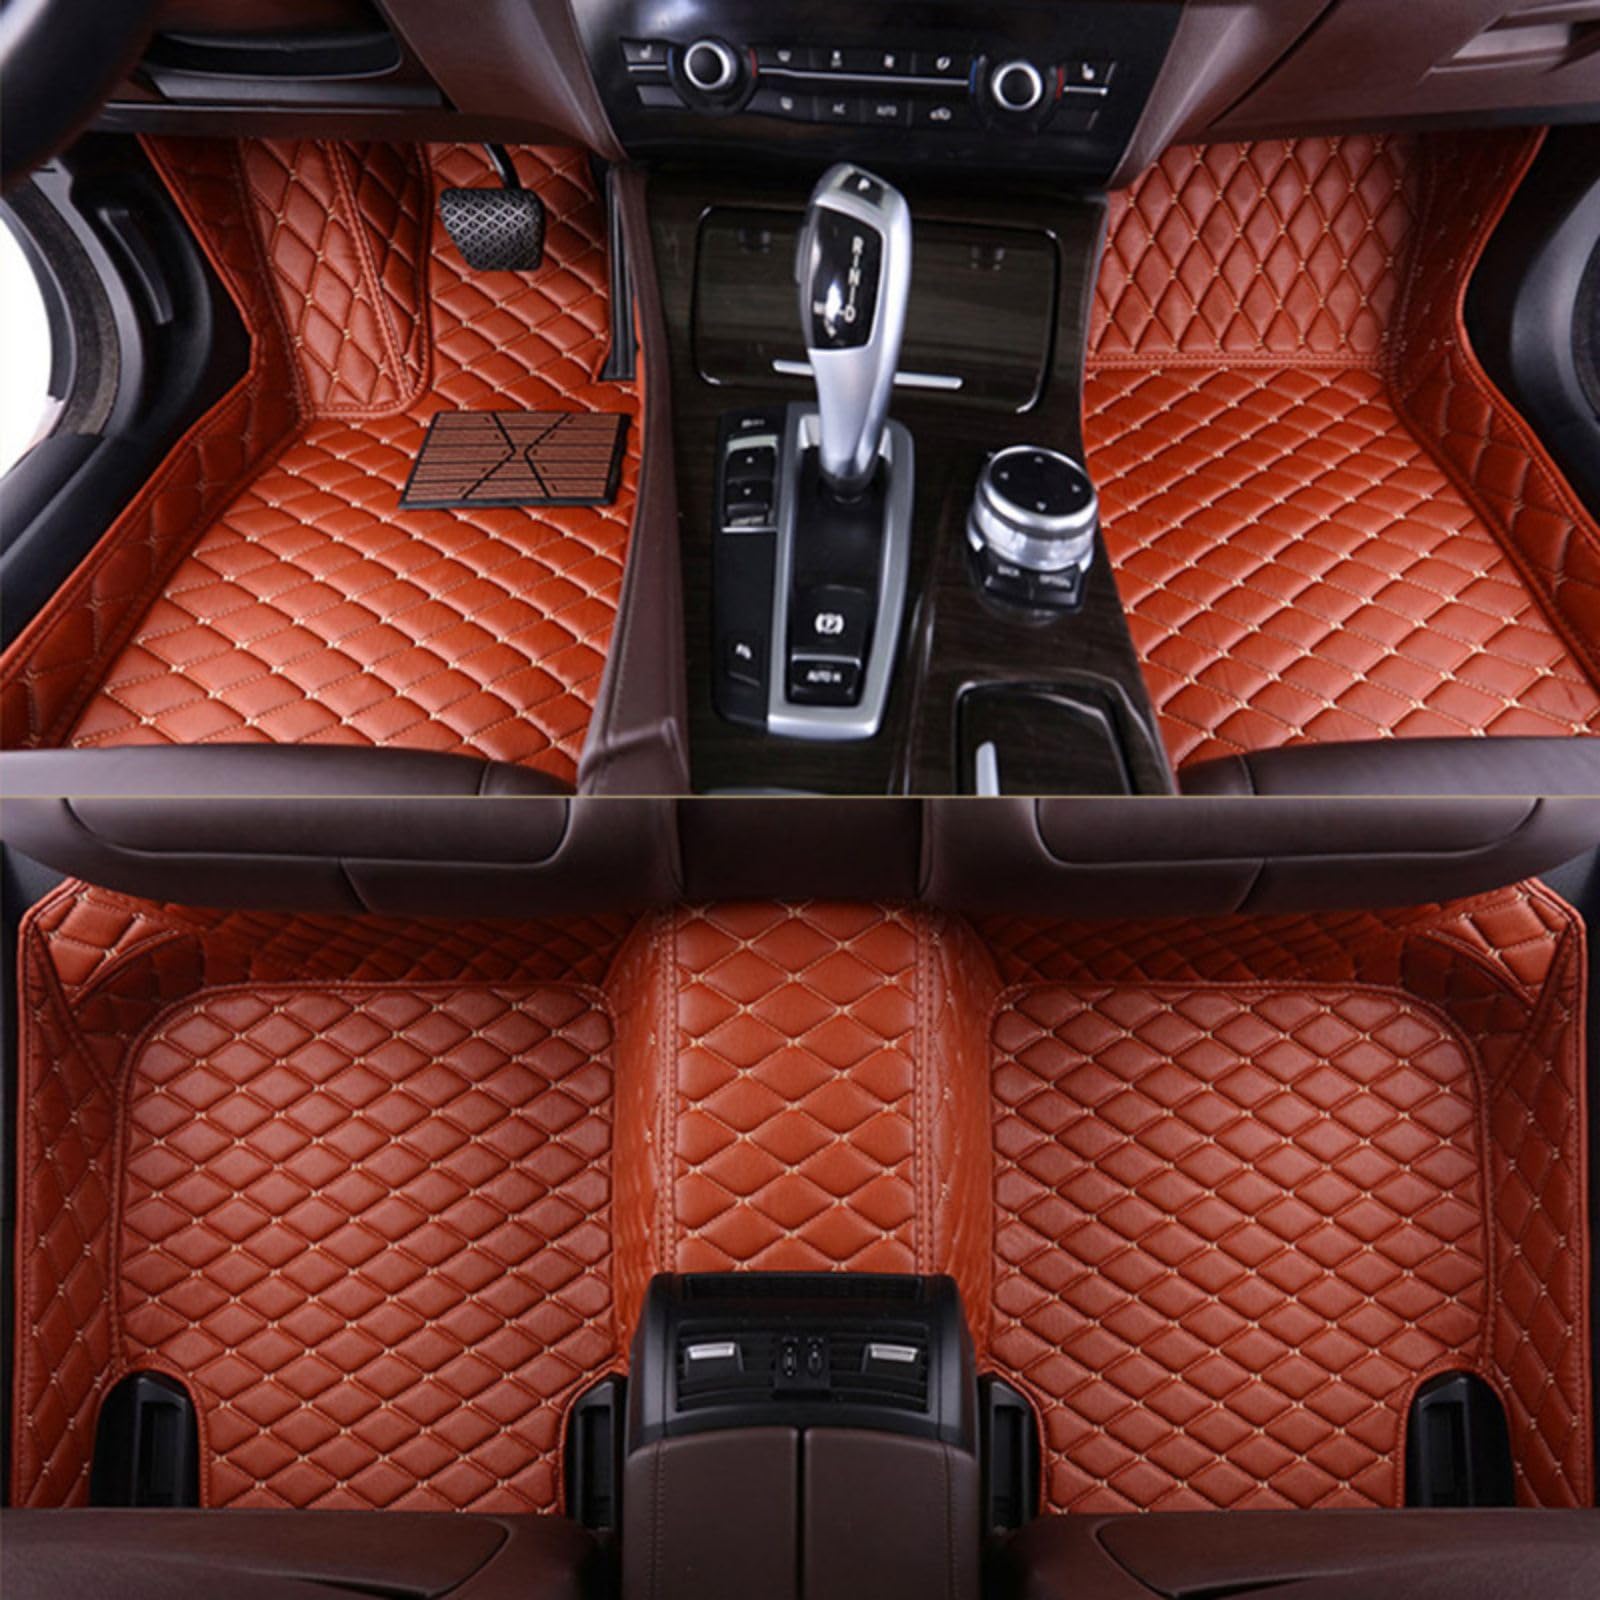 Fussmatten Auto für Audi Q7 (7seats) 2006-2015, PU-Leder Allwetter wasserdichte rutschfeste Auto Fussmatten Set Interieur-Accessoires,Brown von LYYFCB